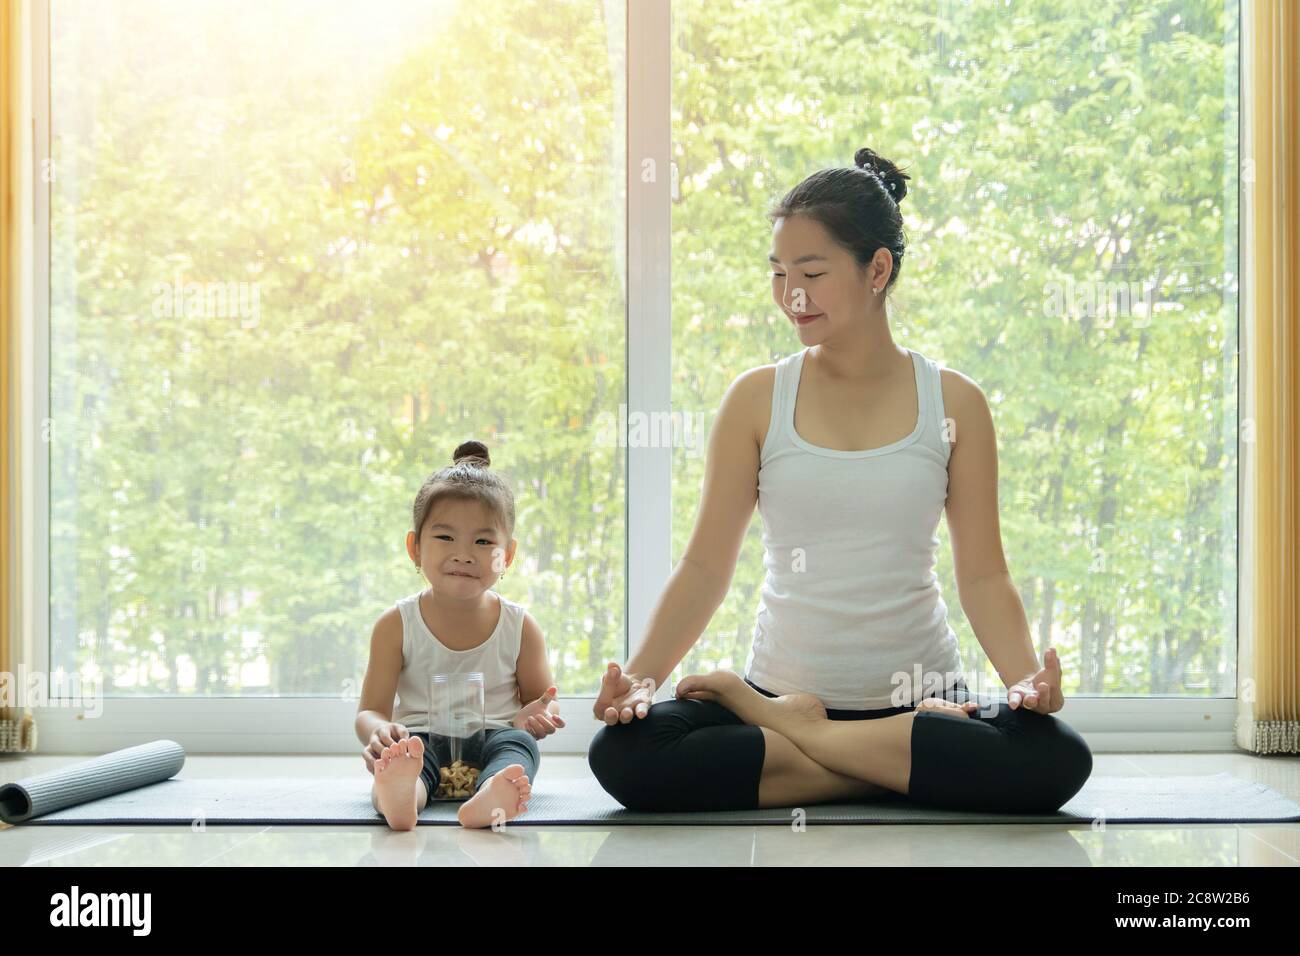 Une mère asiatique a pratiqué le yoga en s'asseyant en position lotus à la maison avec une fille assise à côté et en dégustant un en-cas avec le visage souriant pendant l'entraînement Banque D'Images